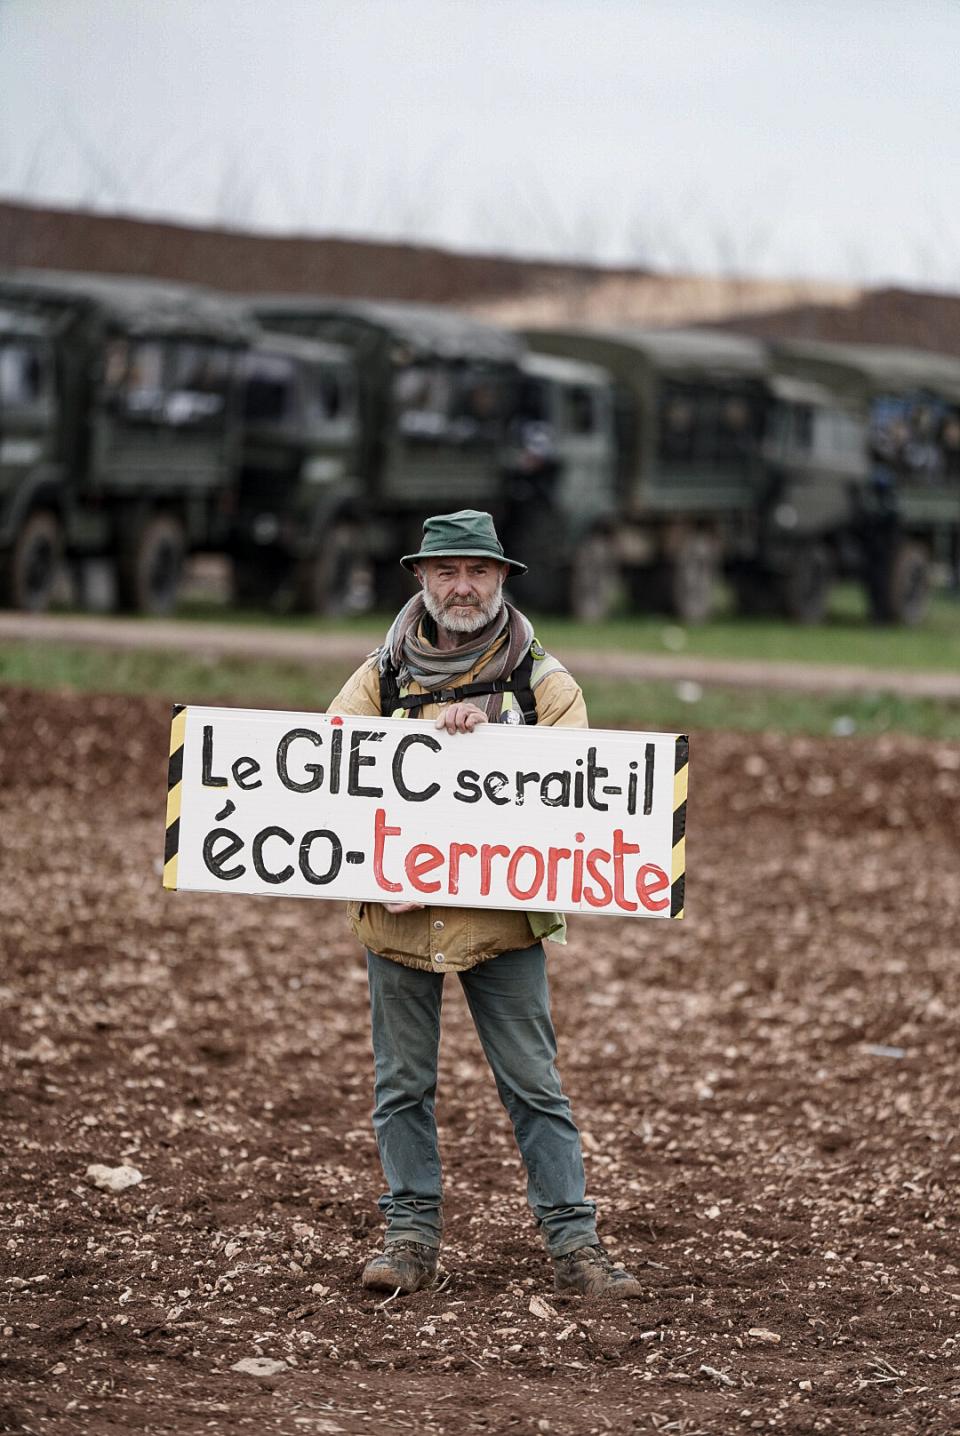 "Le GIEC serait-il éco-terroriste ?" dit la pancarte.